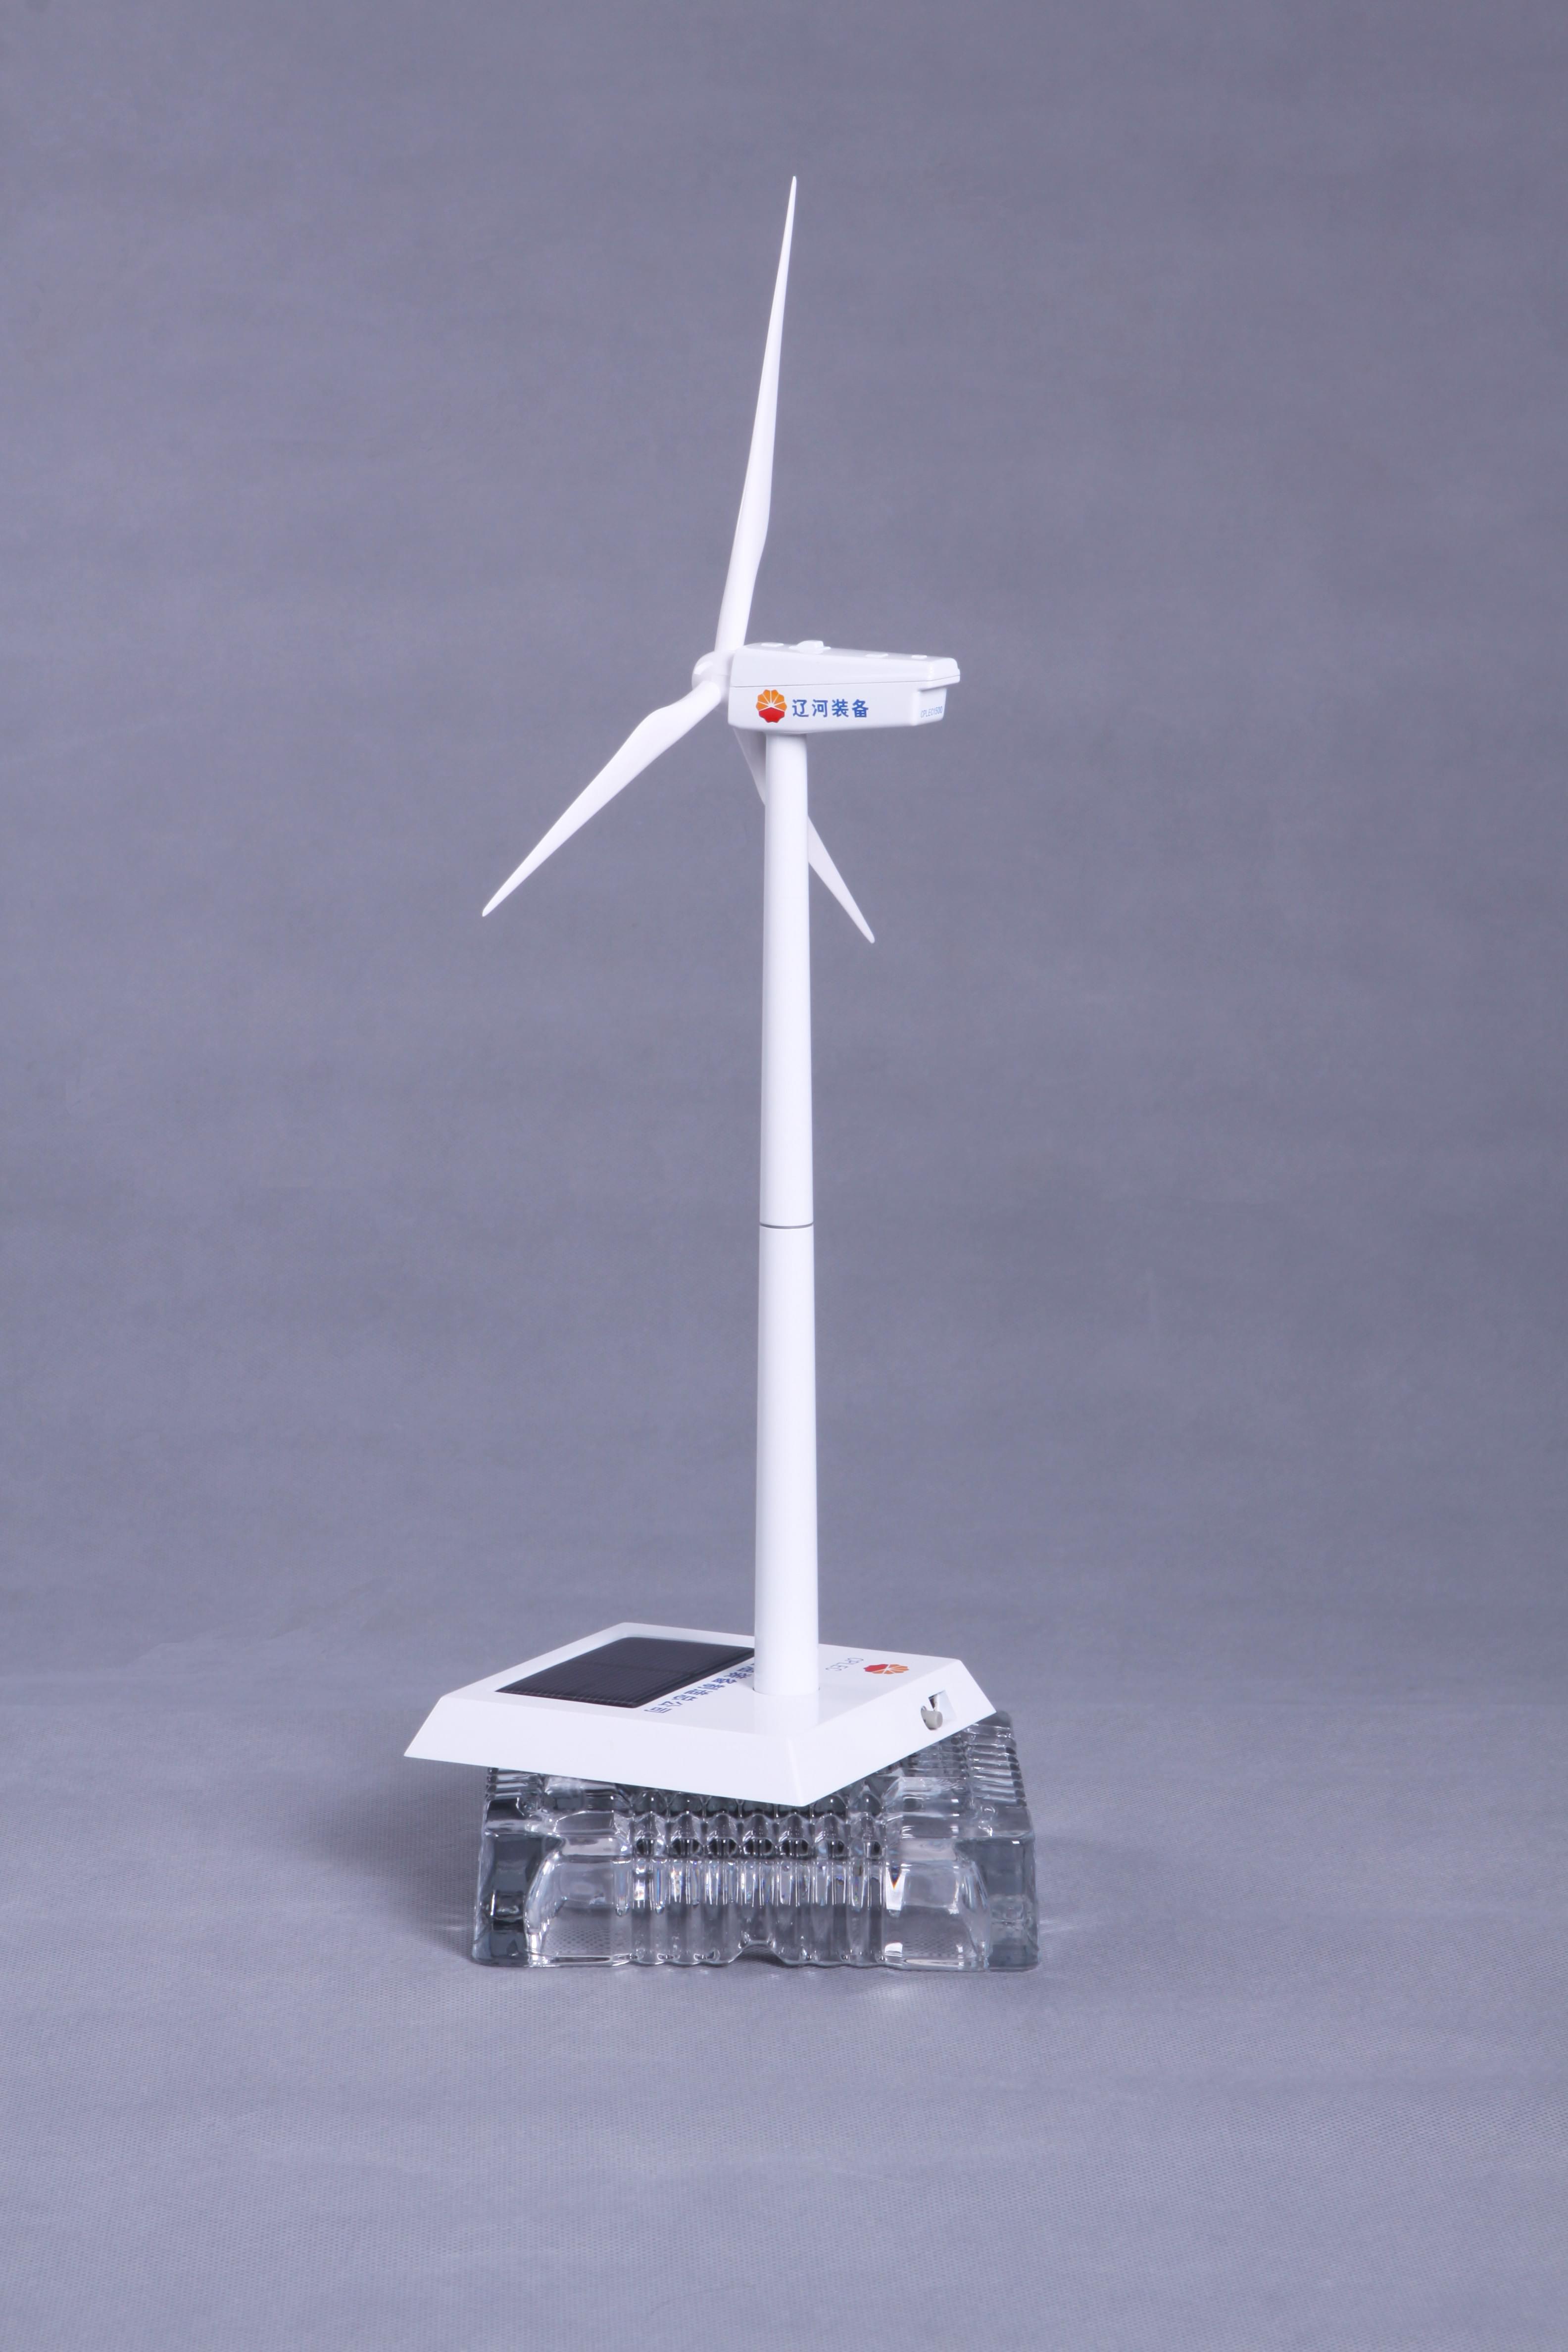 太阳能风车模型